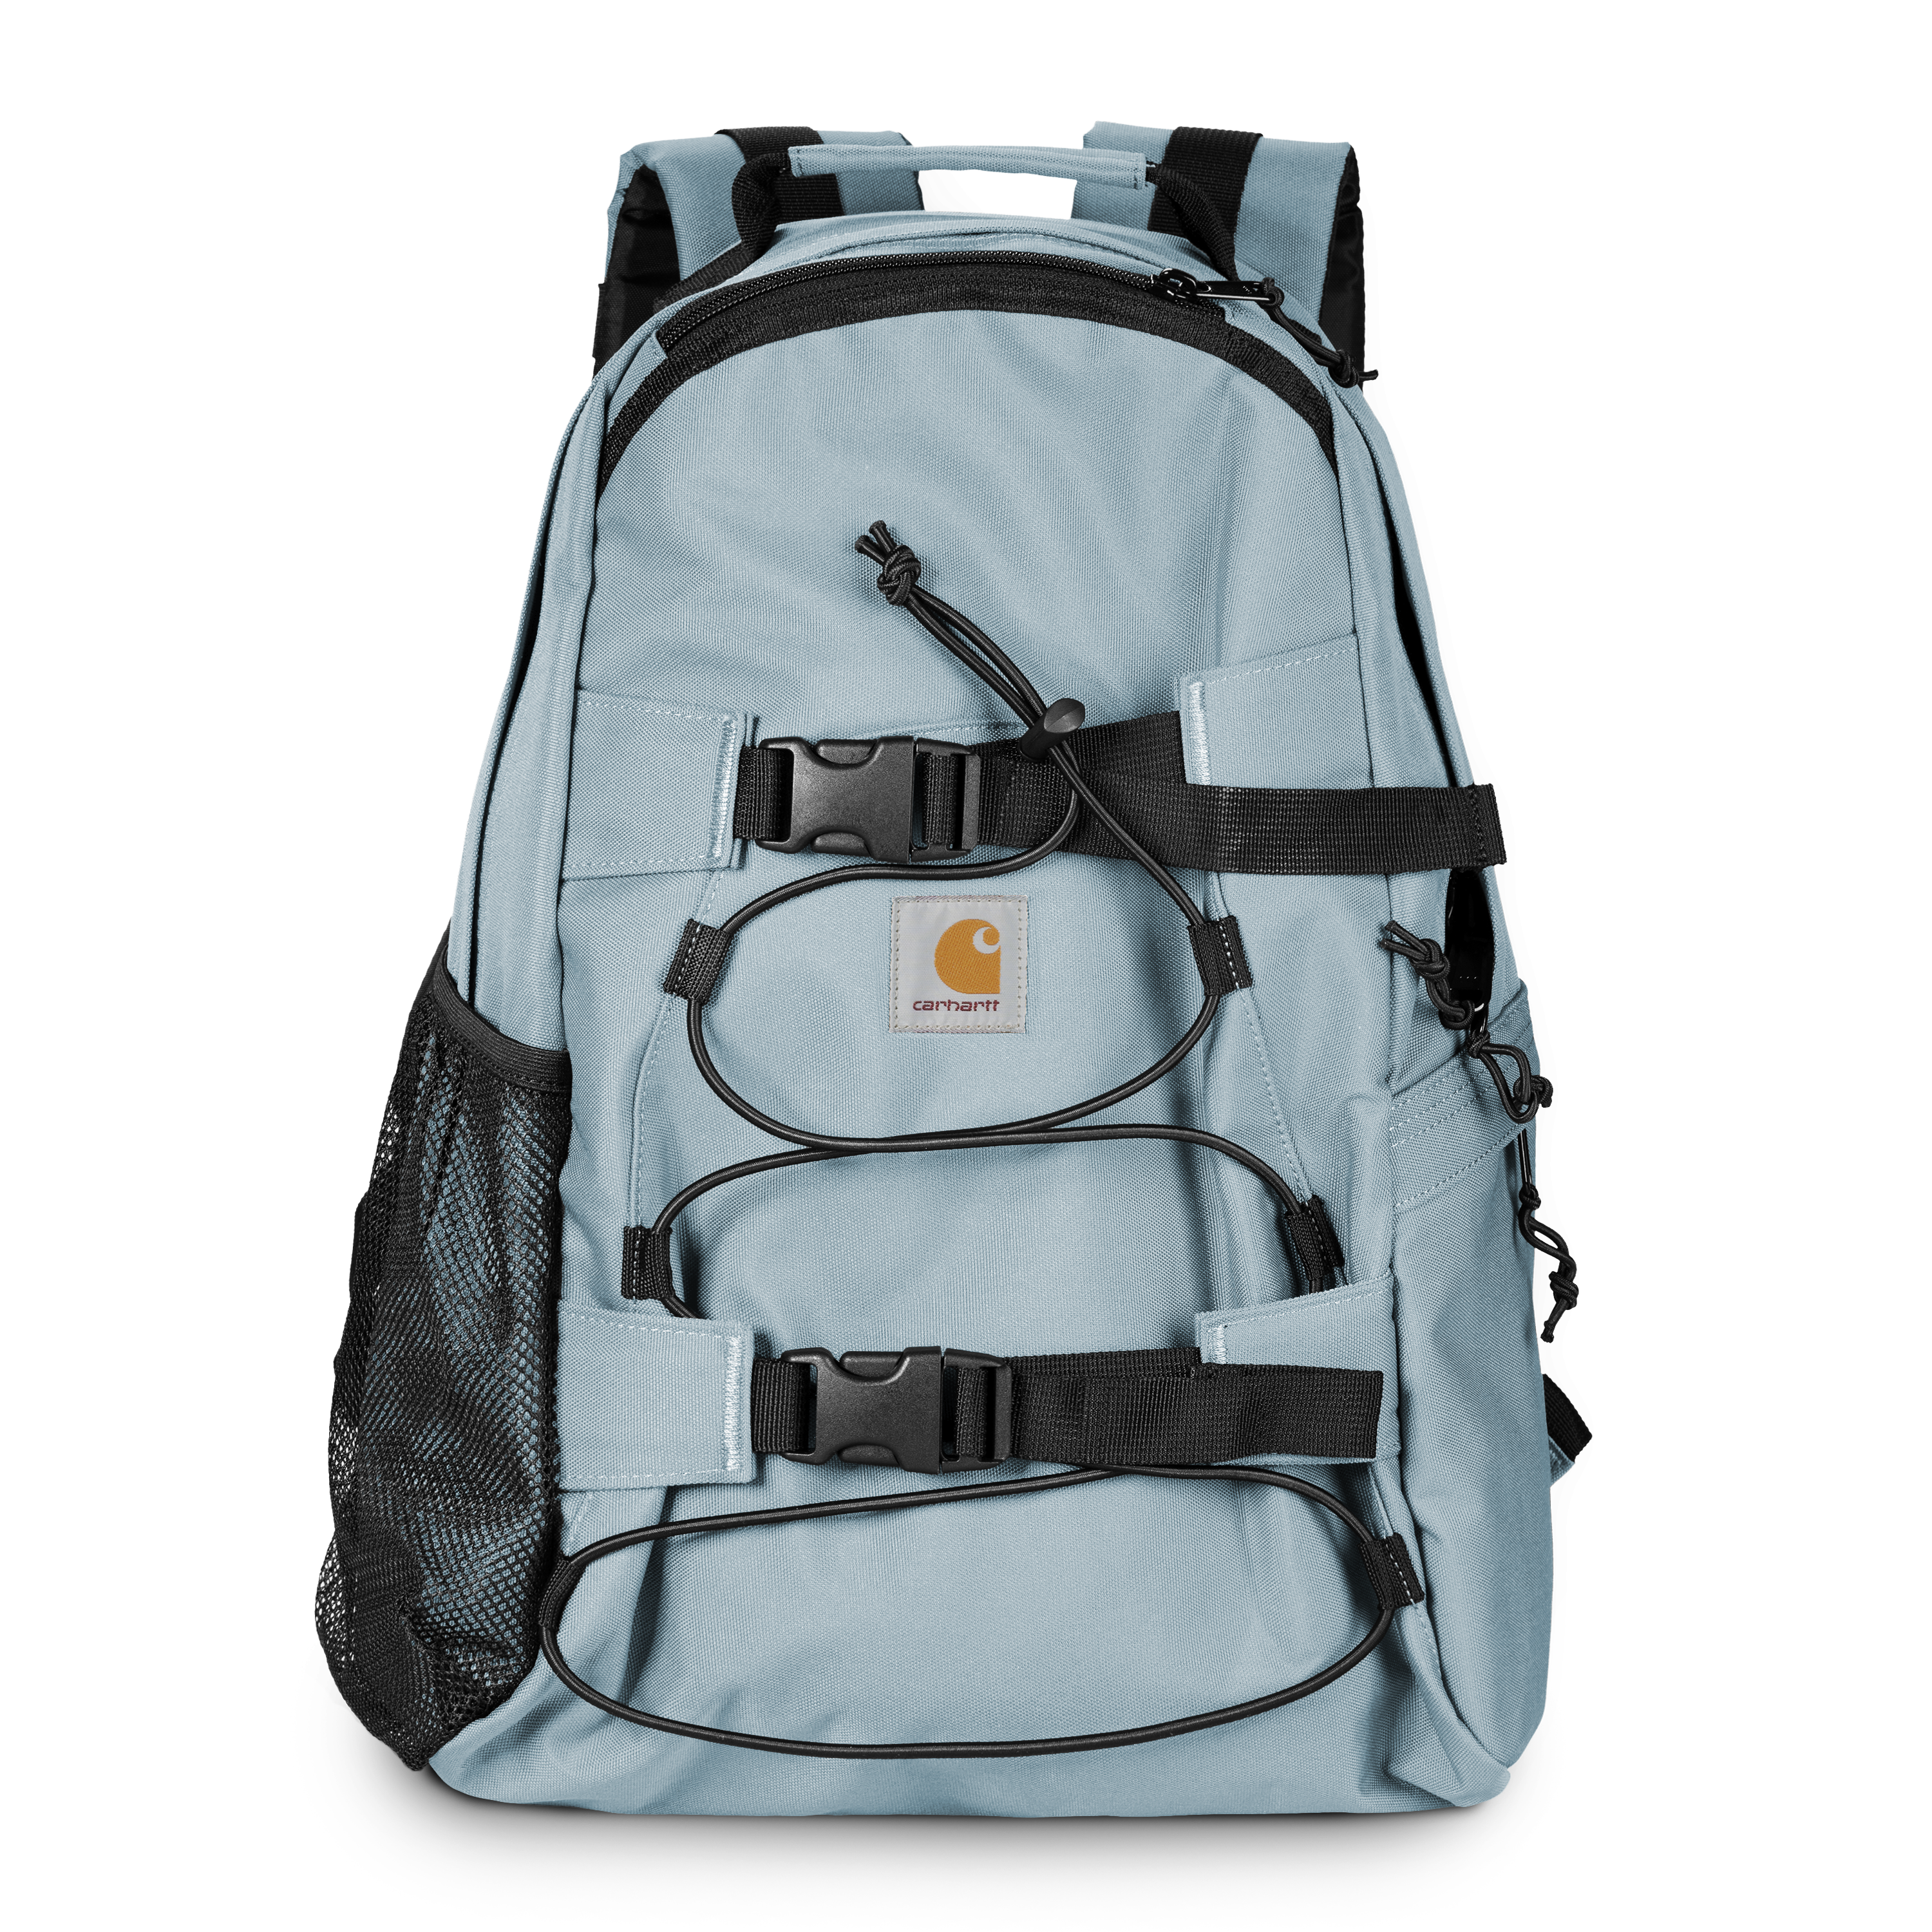 Carhartt WIP Kickflip Backpack in Blu